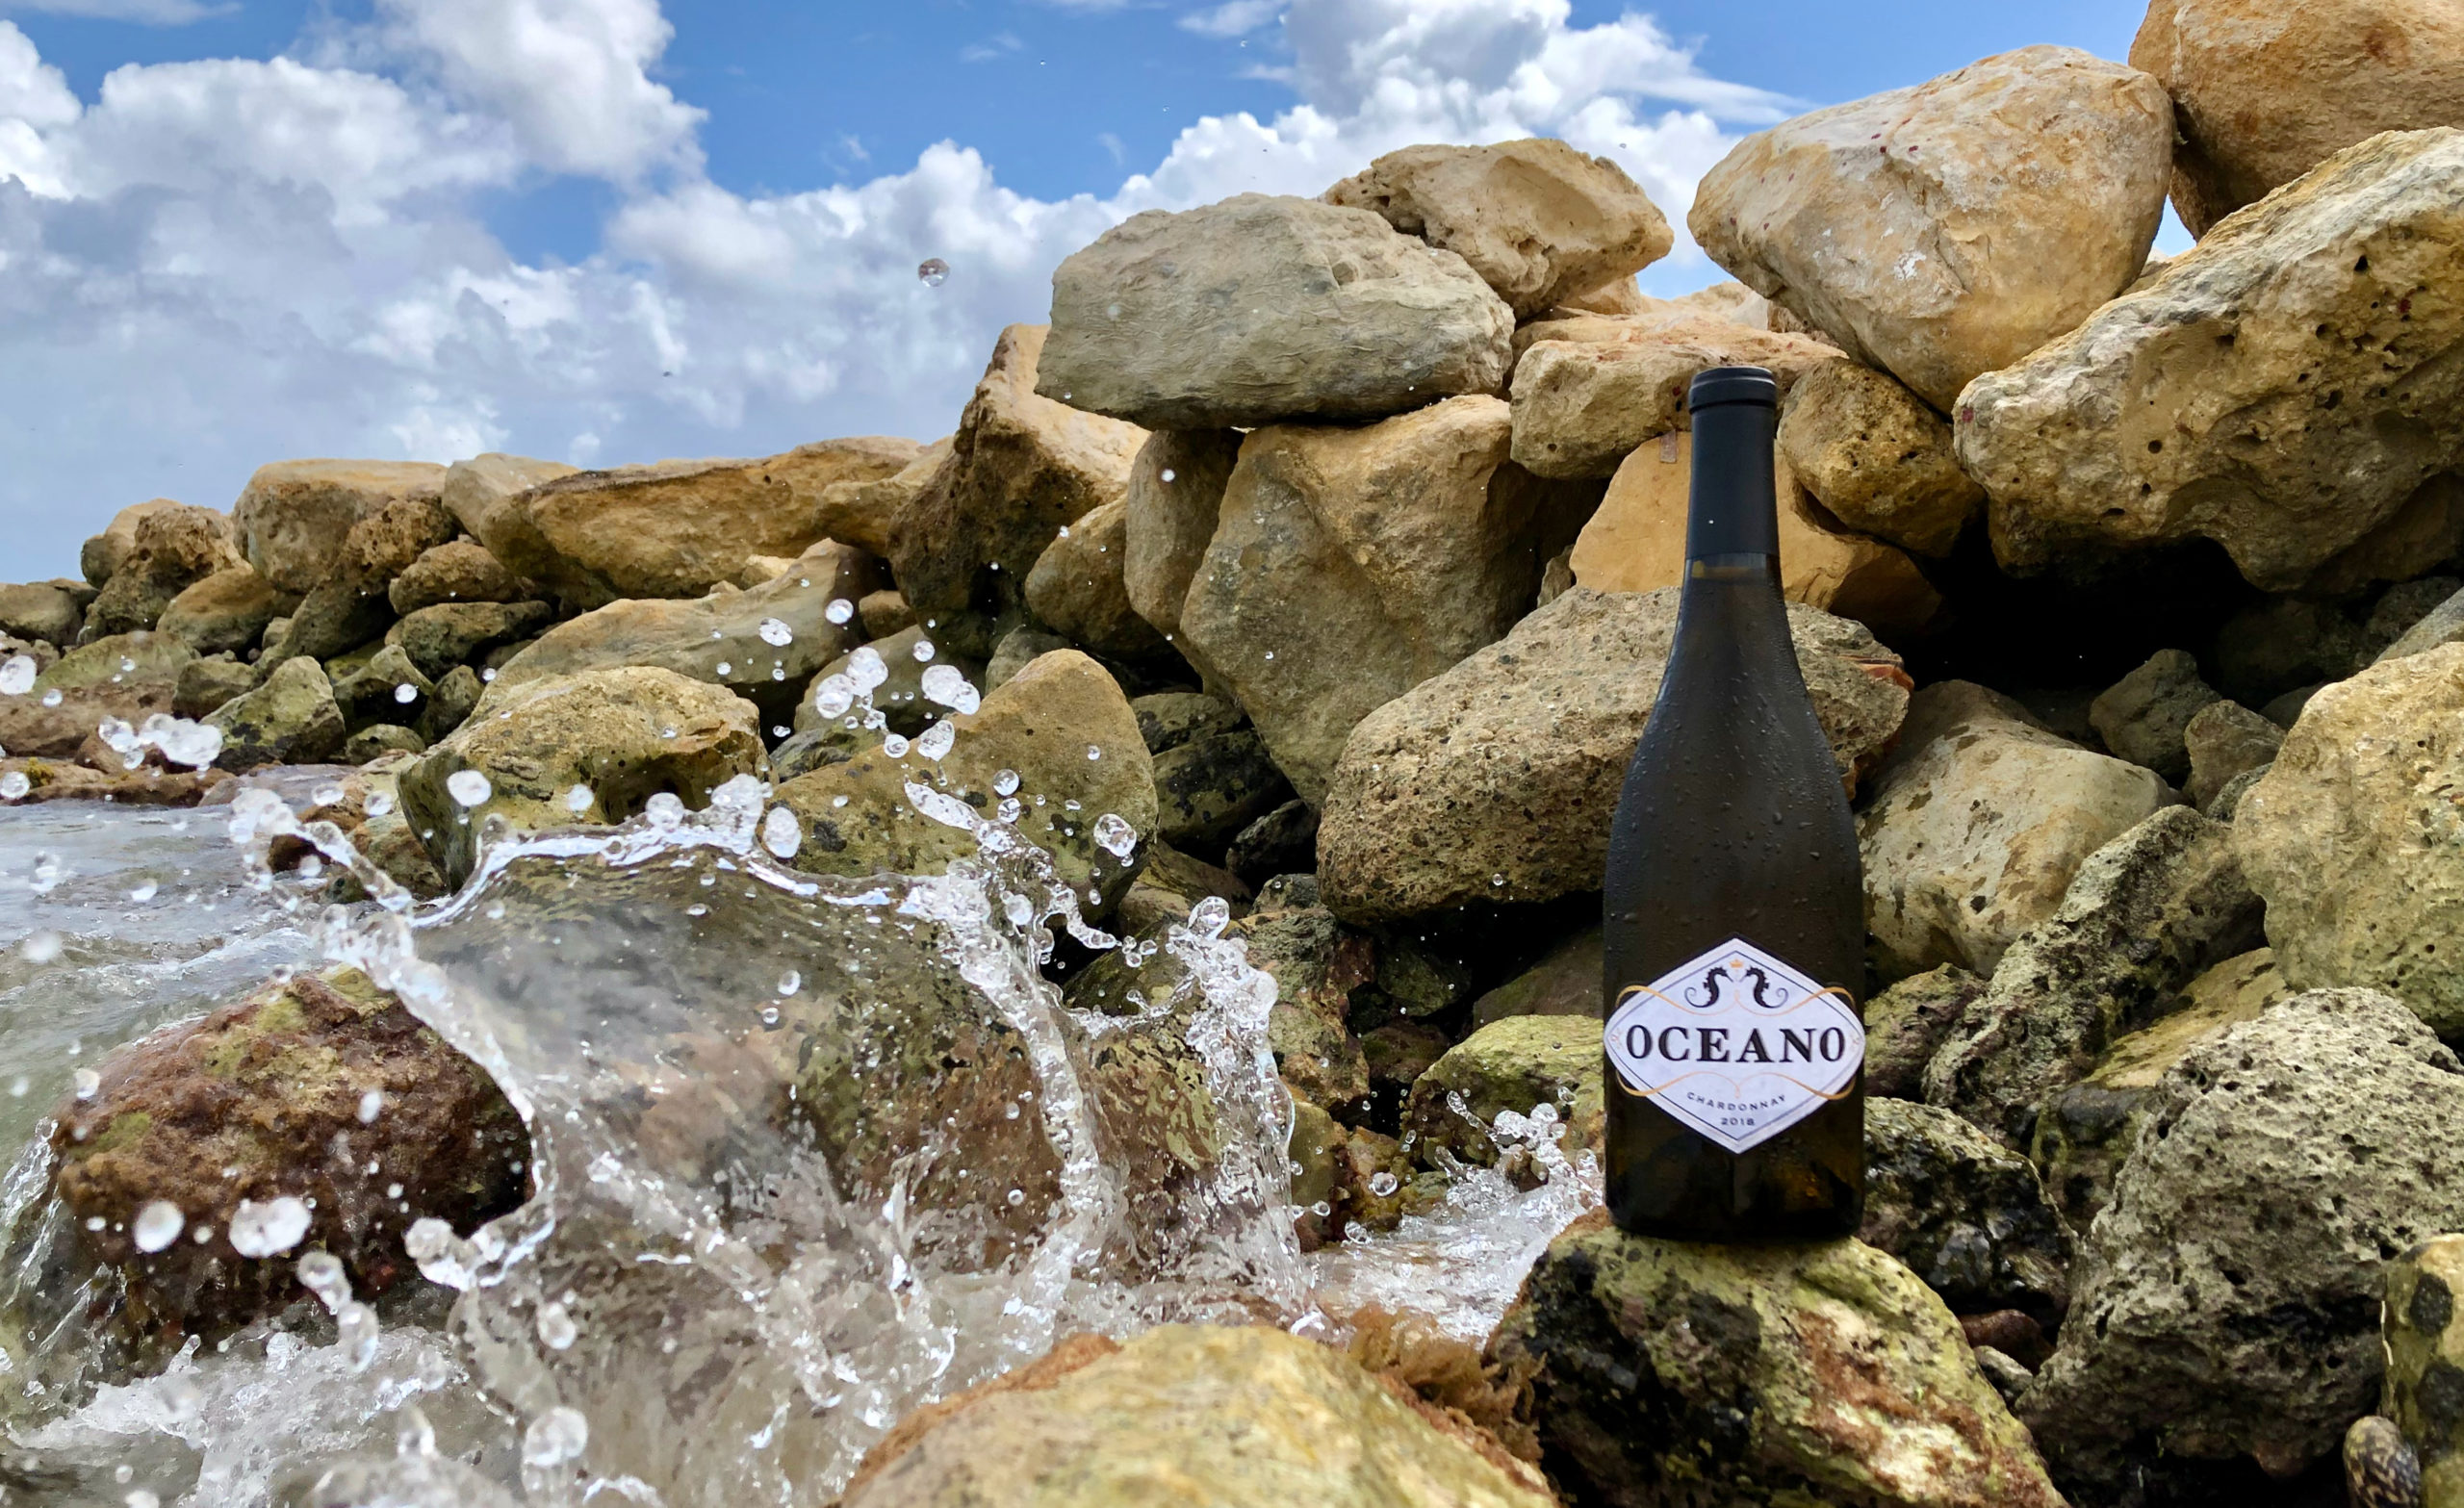 water splashing on rocks with an Oceano wine bottle on one